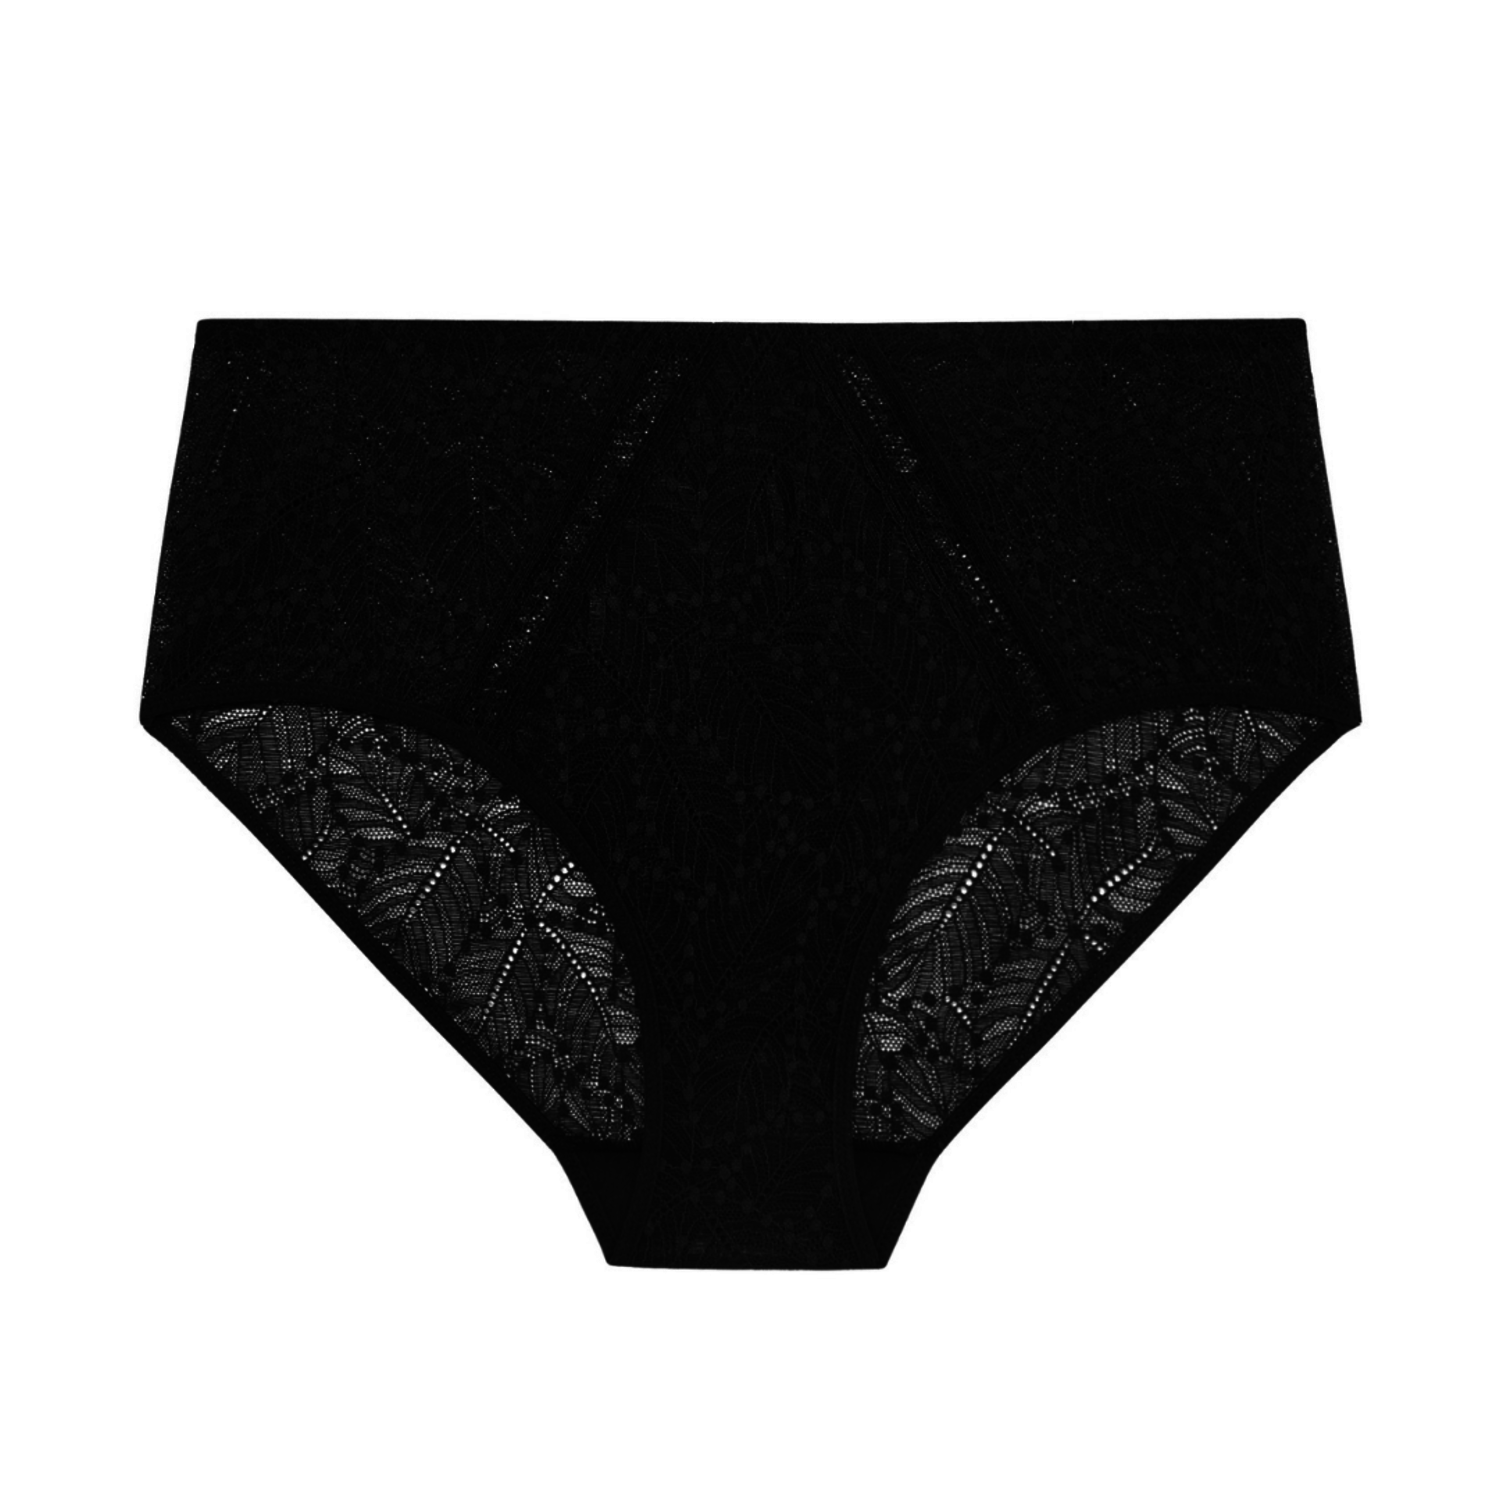 Comete Retro Brief Panty Black 12S770 - Lace & Day